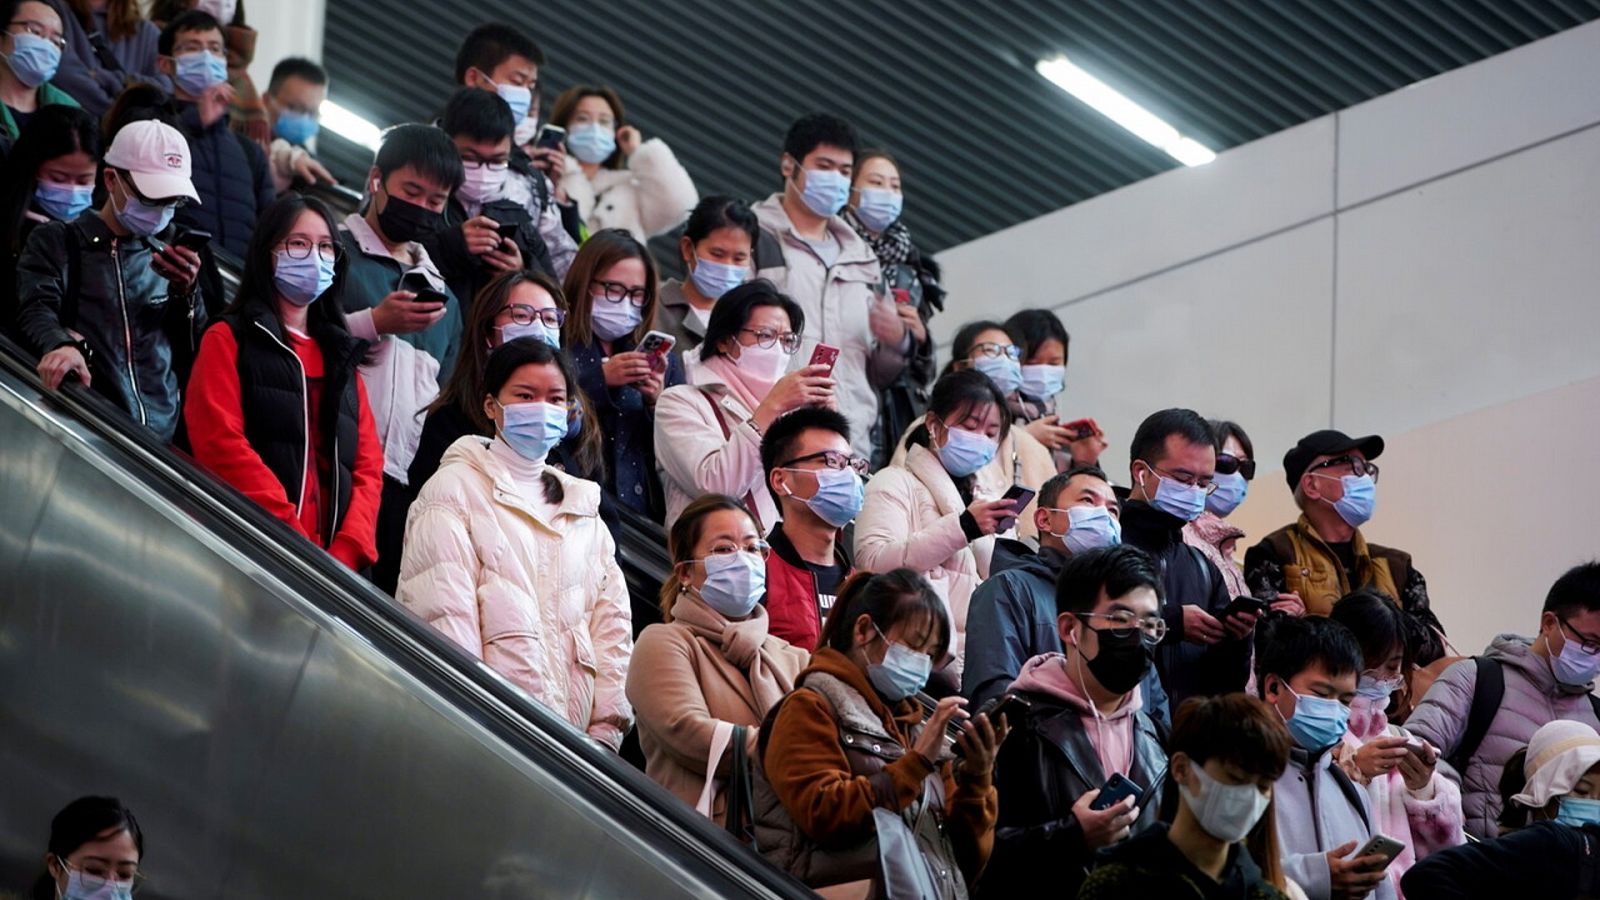 Pasajeros con mascarillas en el metro de Shanghai, China. REUTERS/Aly Song